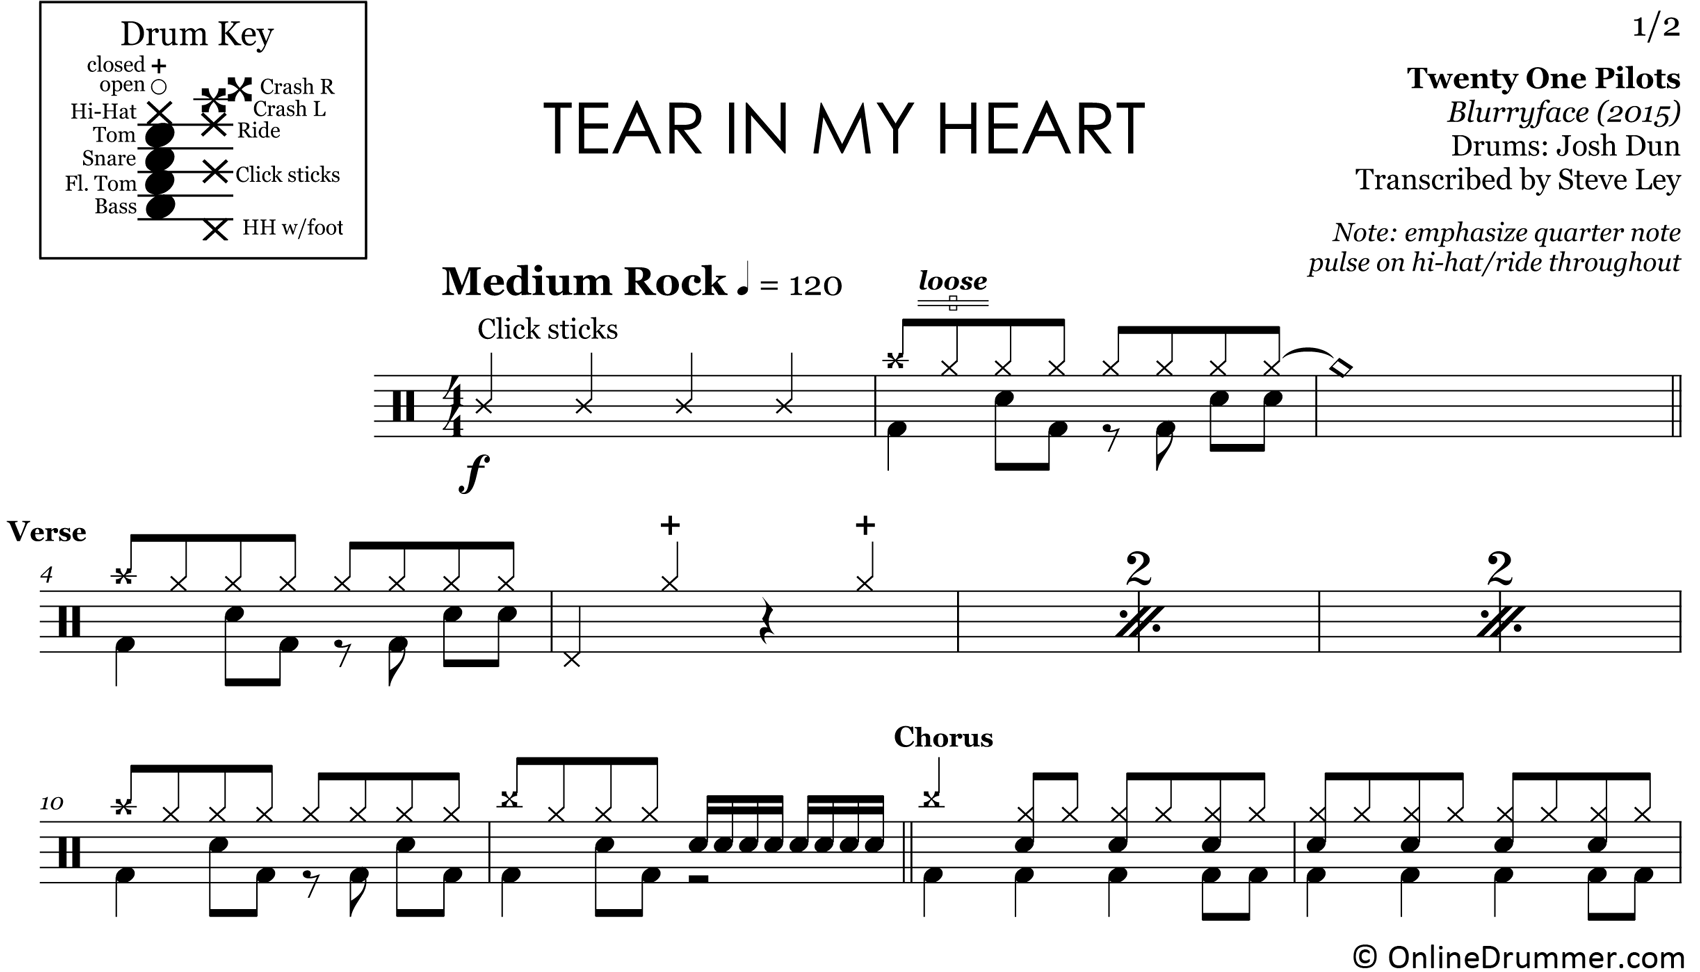 Tear In My Heart - Twenty One Pilots - Drum Sheet Music